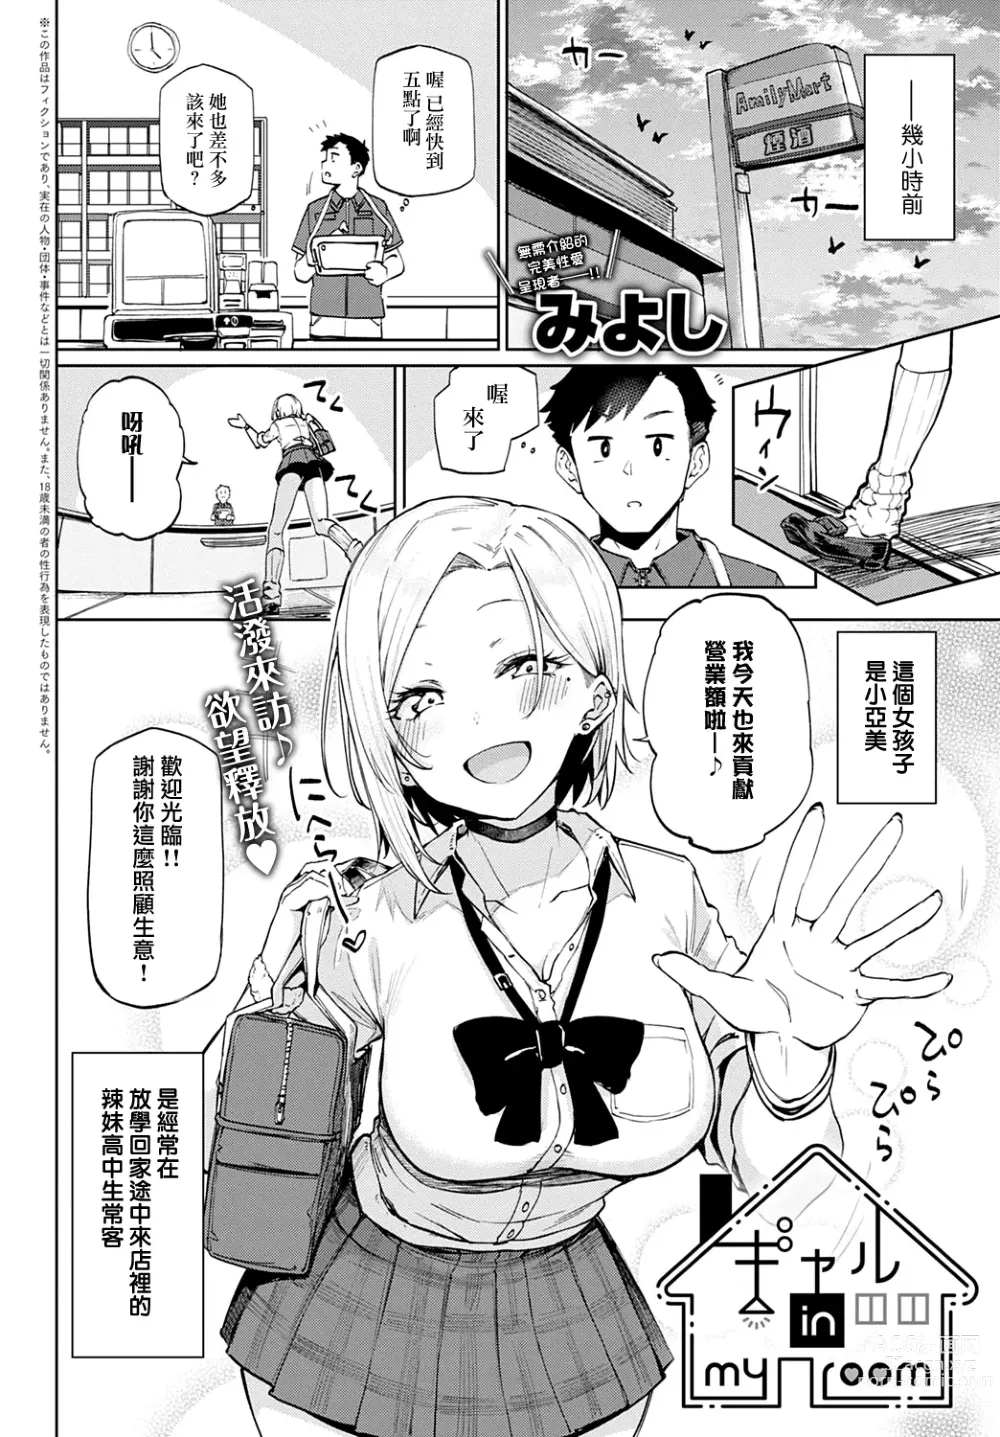 Page 2 of manga 我房間裡的辣妹